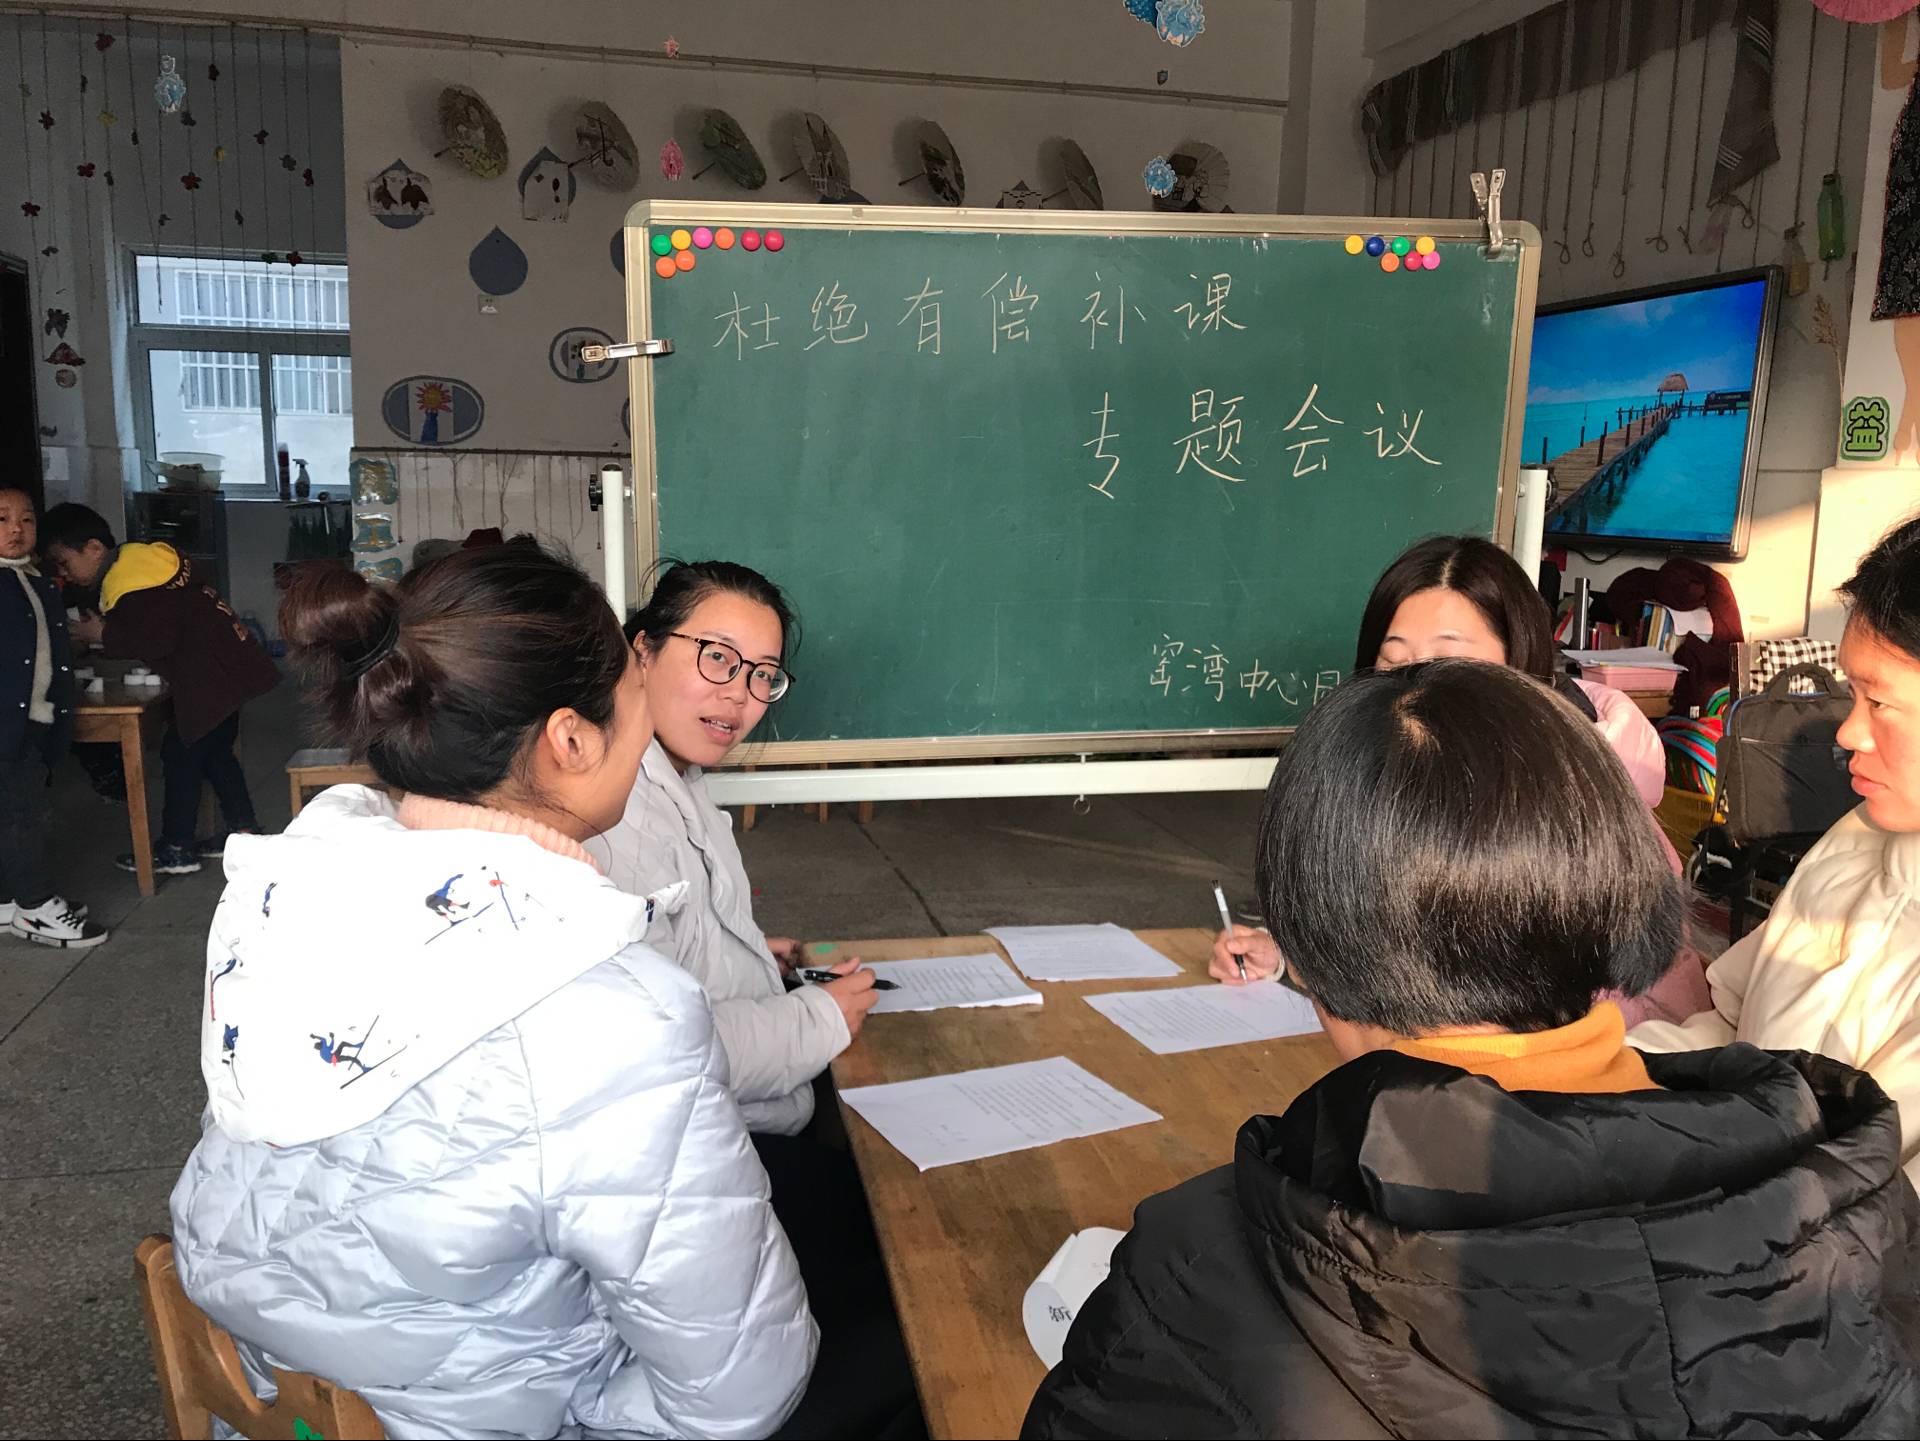 拒绝有偿家教   营造和谐校园                      ——窑湾镇中心幼儿园